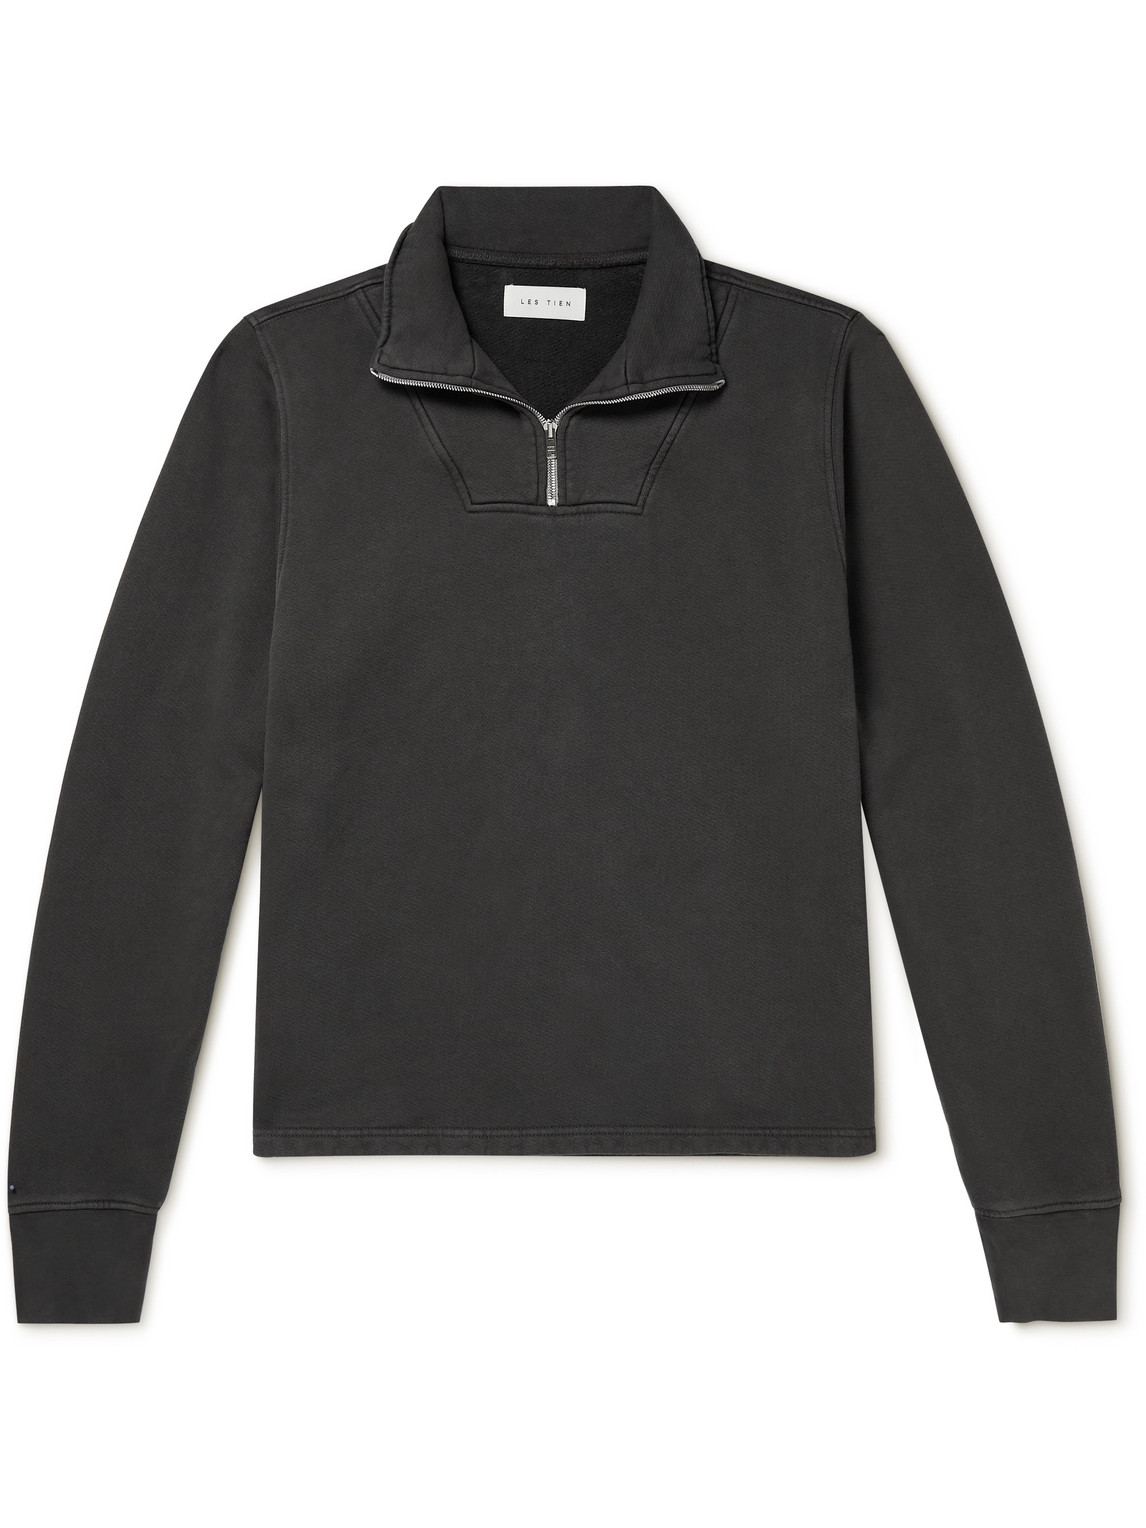 Cotton-Jersey Half-Zip Sweatshirt